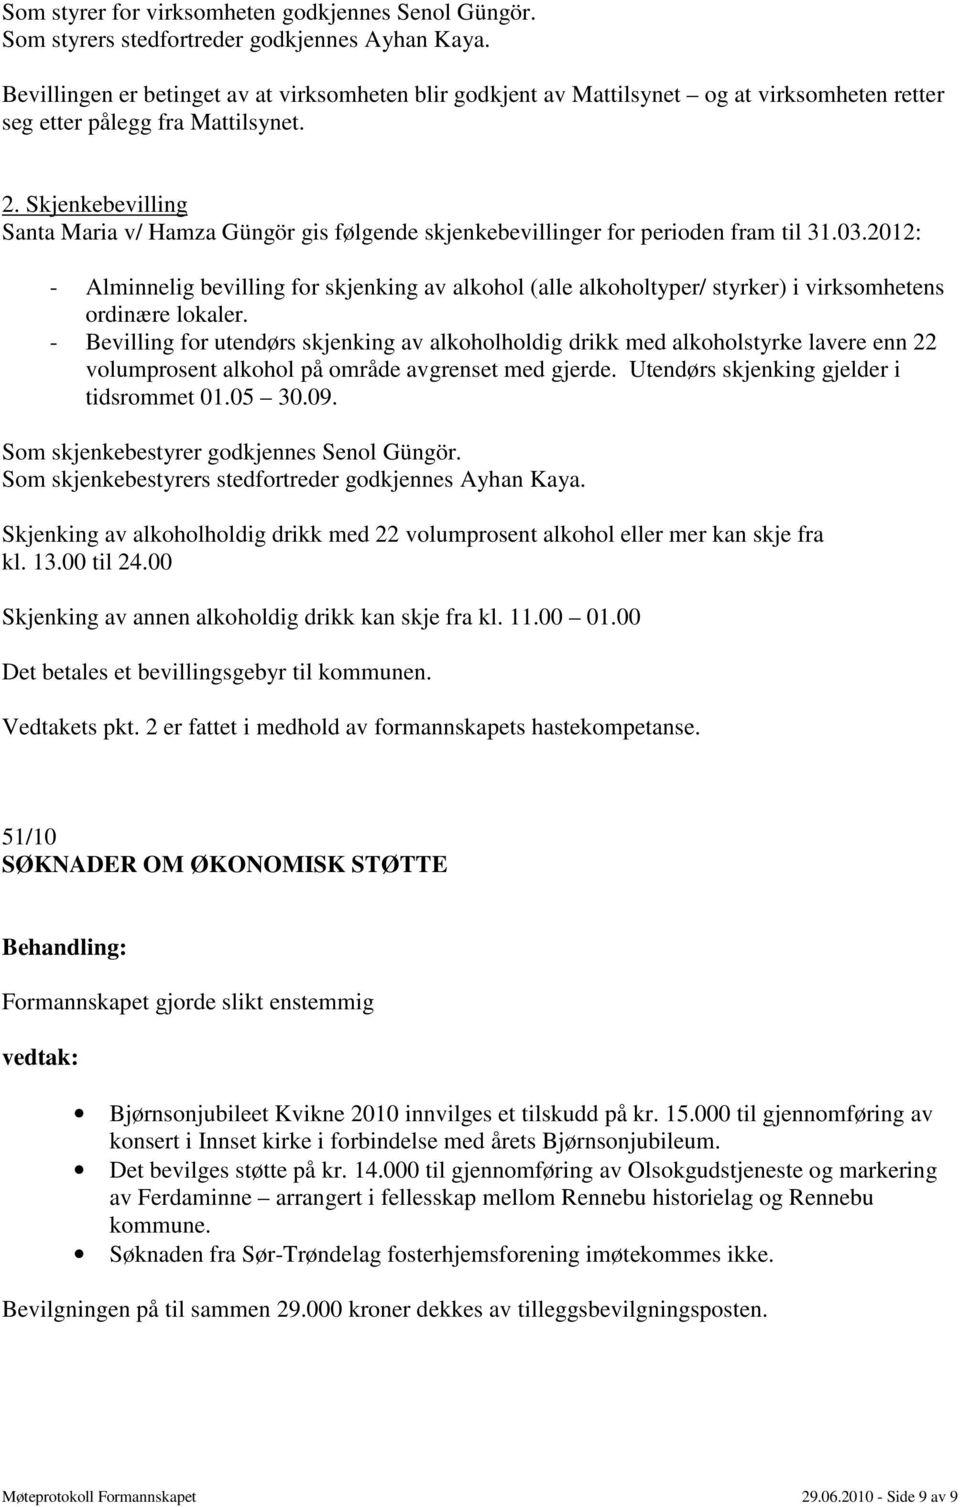 Skjenkebevilling Santa Maria v/ Hamza Güngör gis følgende skjenkebevillinger for perioden fram til 31.03.